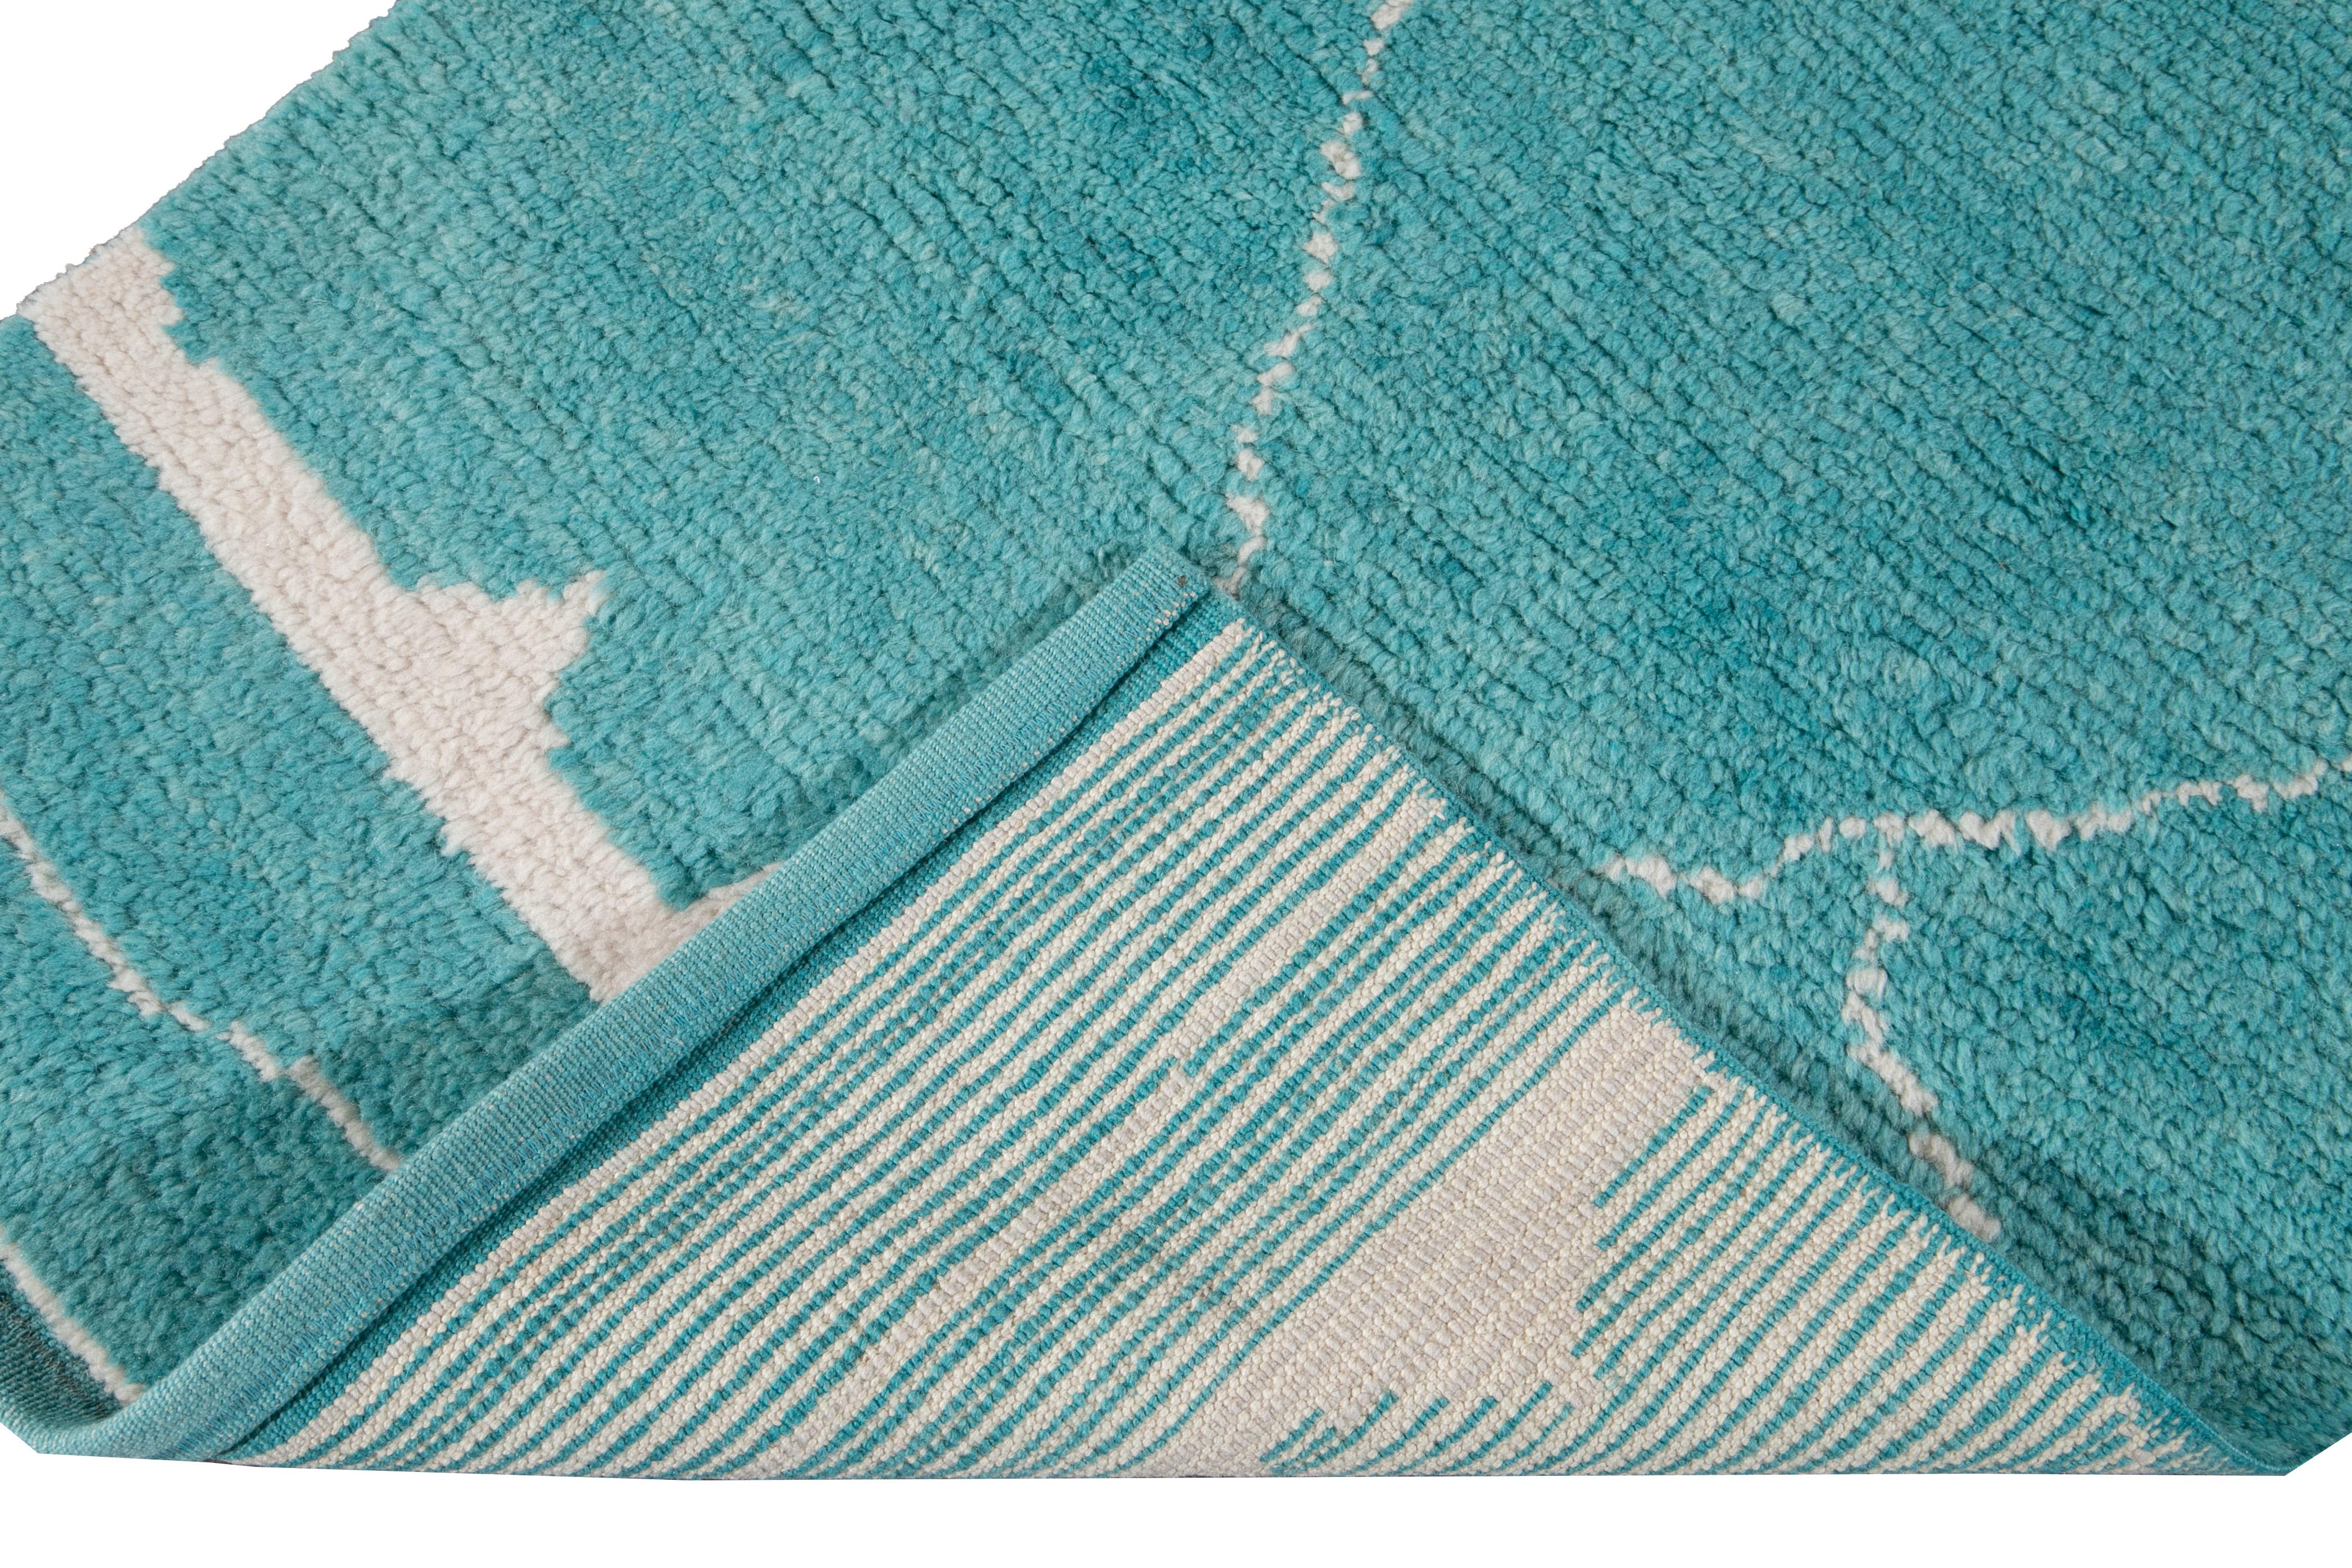 Magnifique tapis contemporain de style marocain en laine nouée à la main avec un champ turquoise. Ce tapis moderne présente un accent ivoire dans un magnifique motif géométrique tribal.

Ce tapis mesure : 2'11